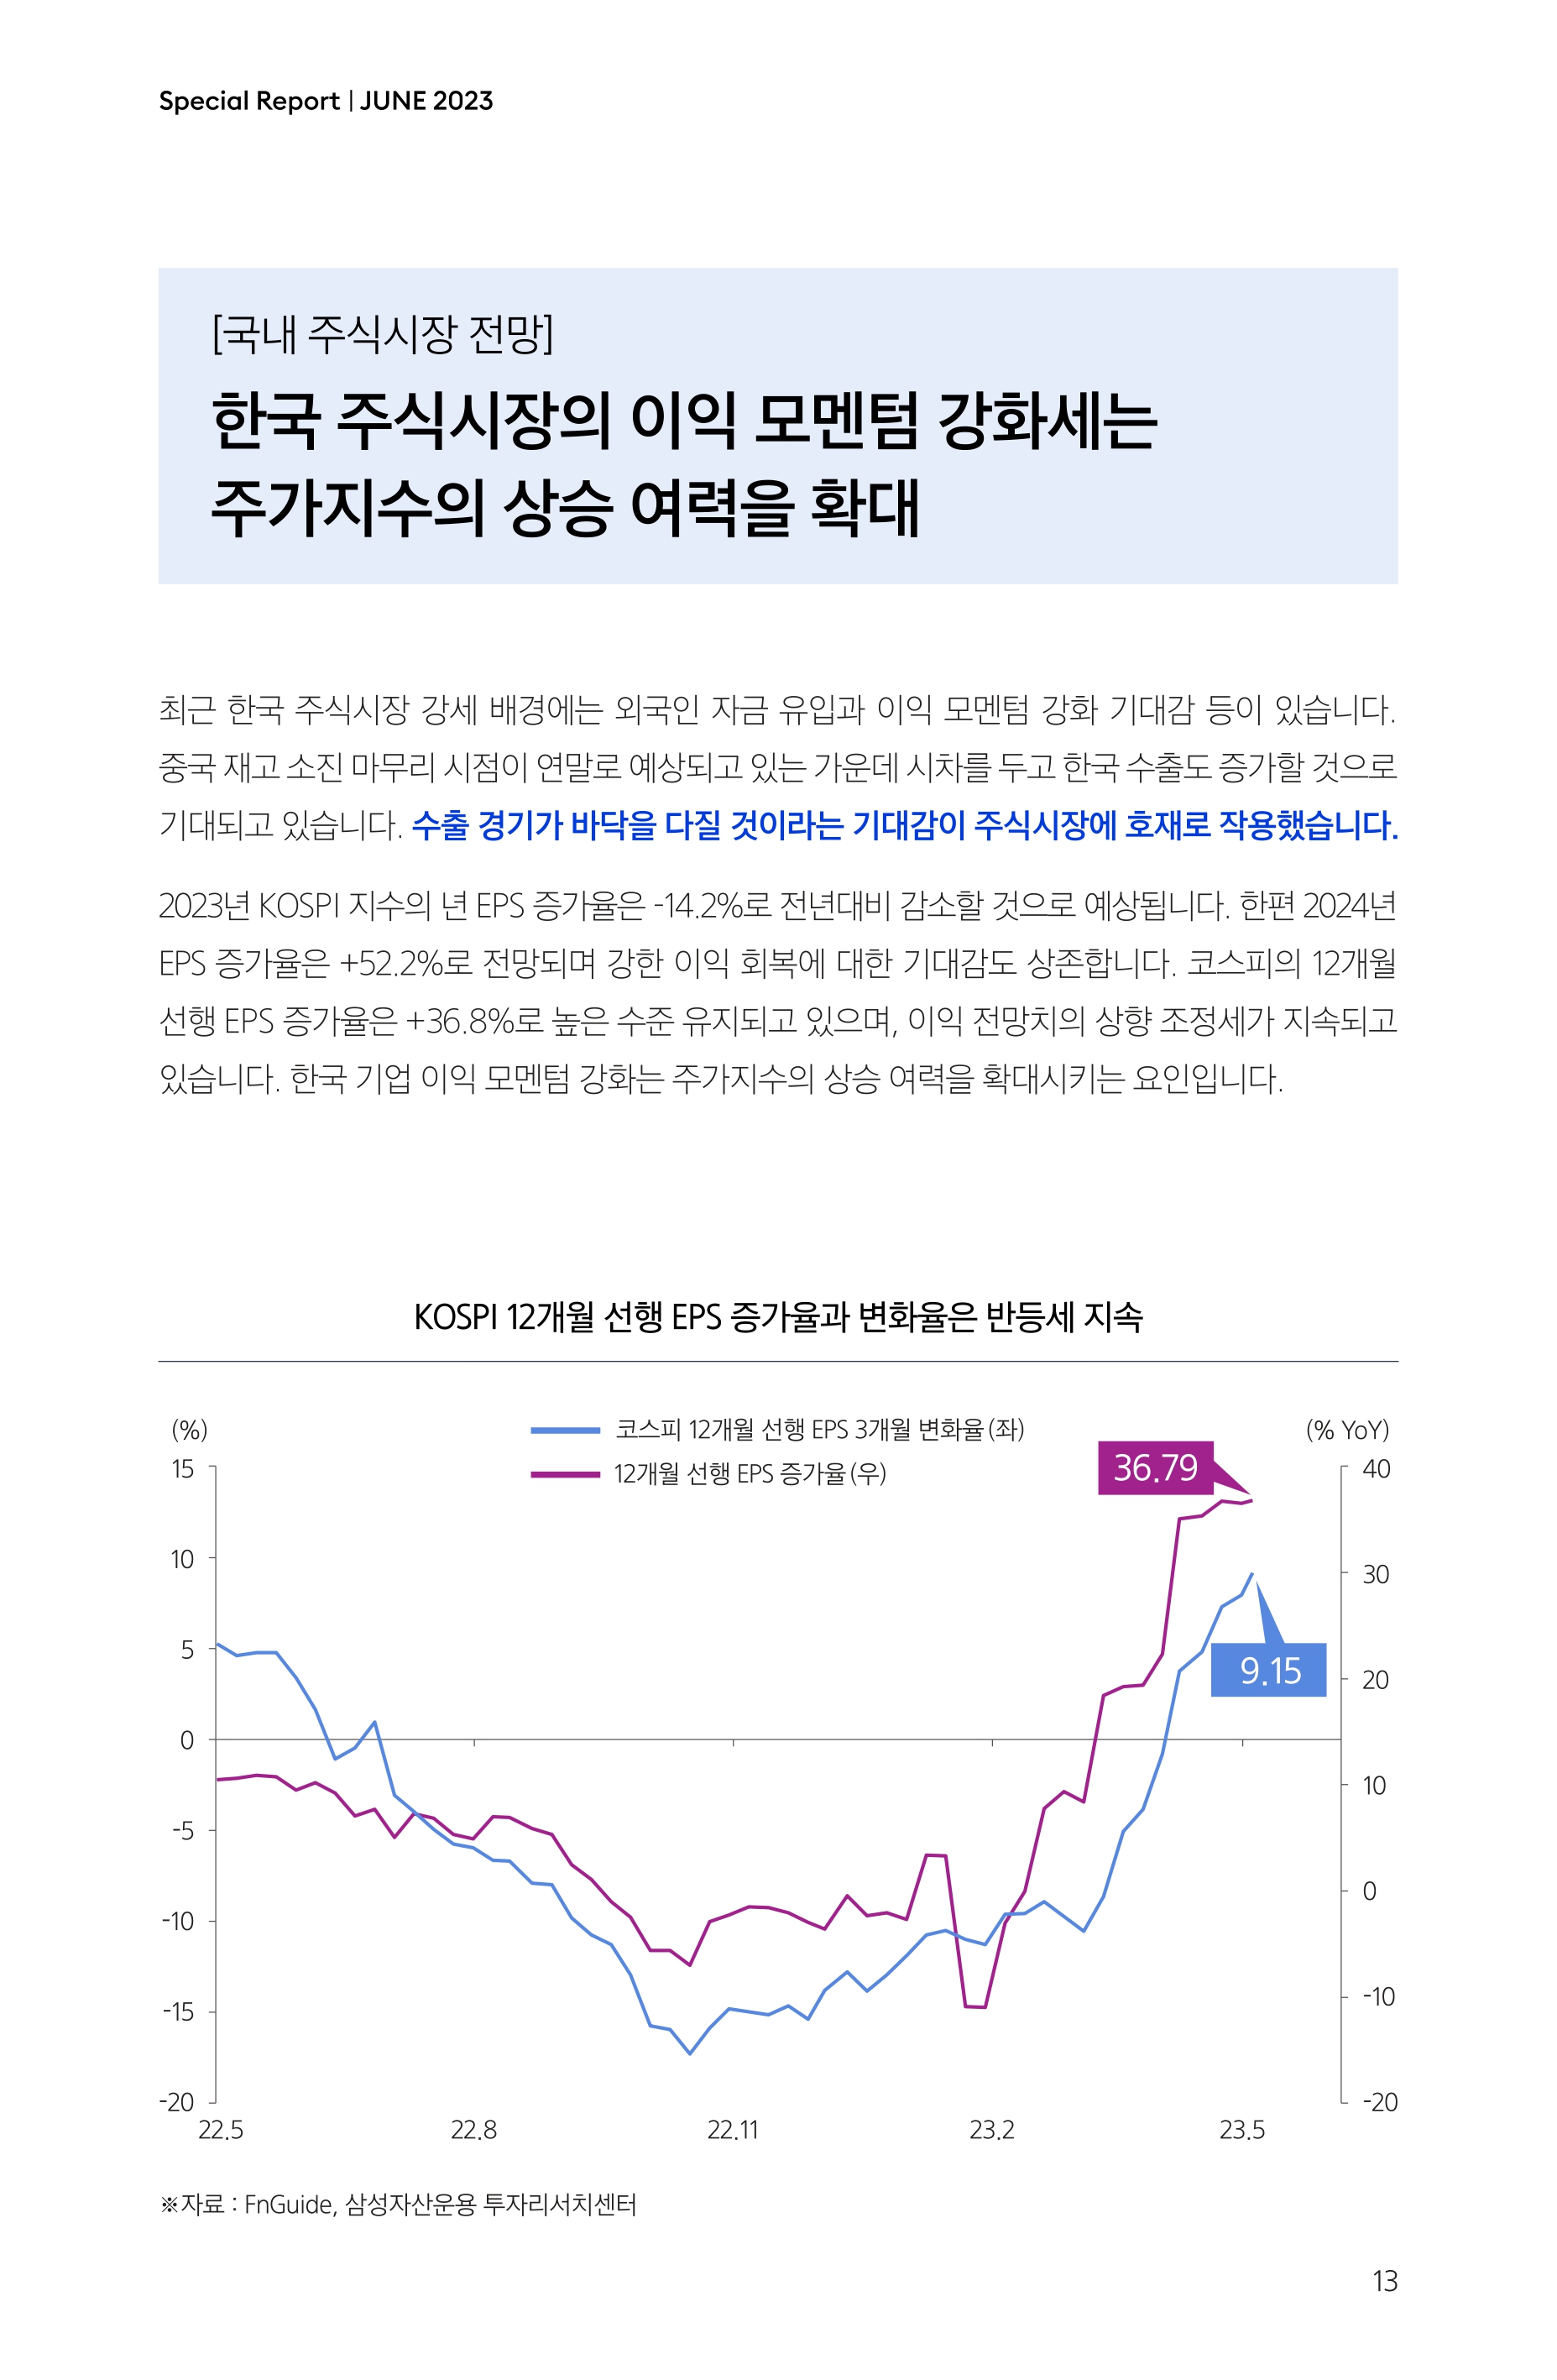 Samsung Global Market Outlook(낱장)_202306_page-0013.jpg